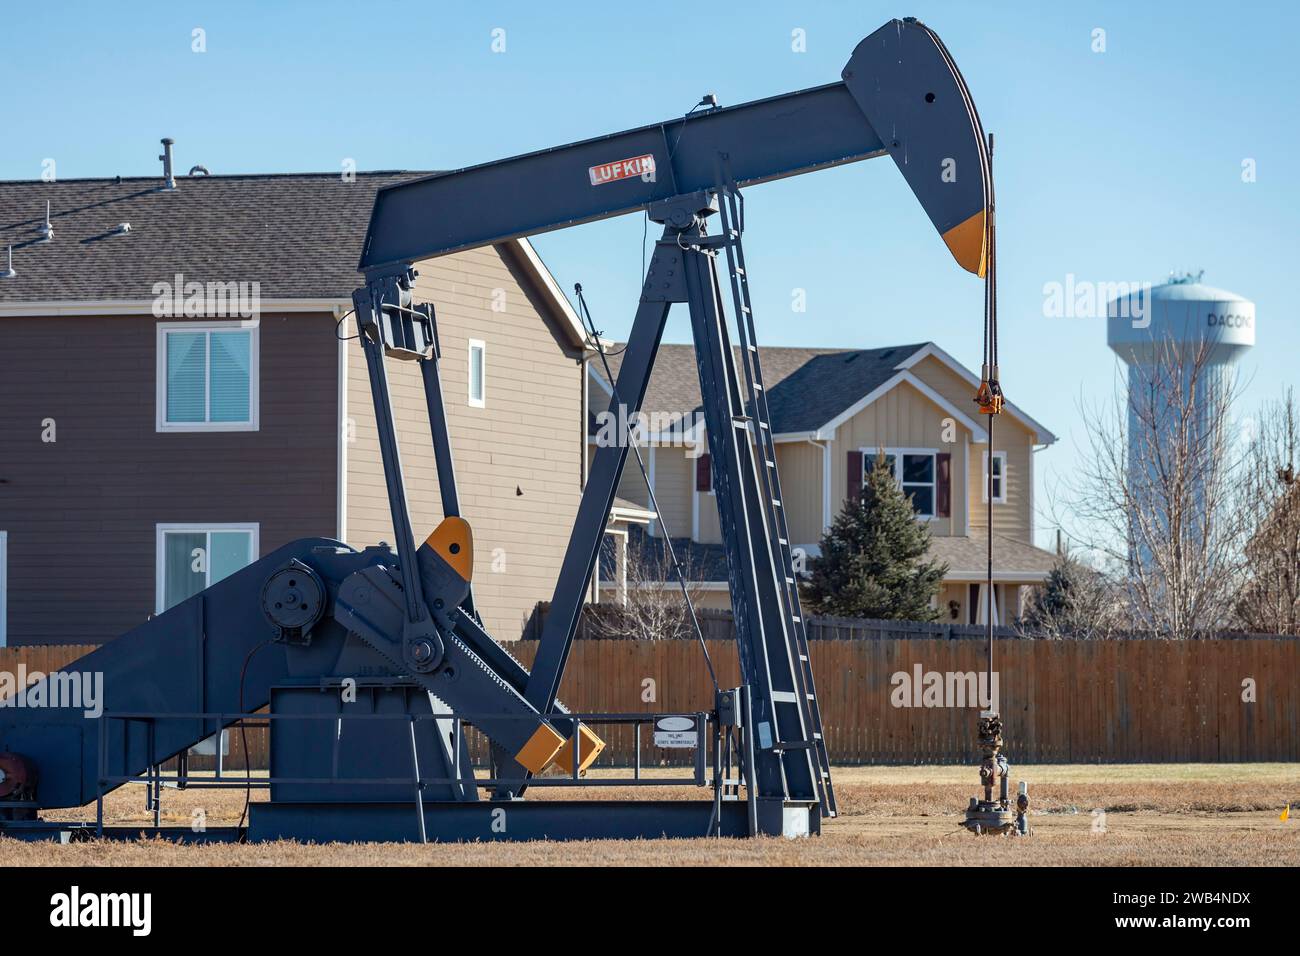 Frederick, Colorado - un pozzo petrolifero vicino a una suddivisione abitativa sul fronte del Colorado. Foto Stock